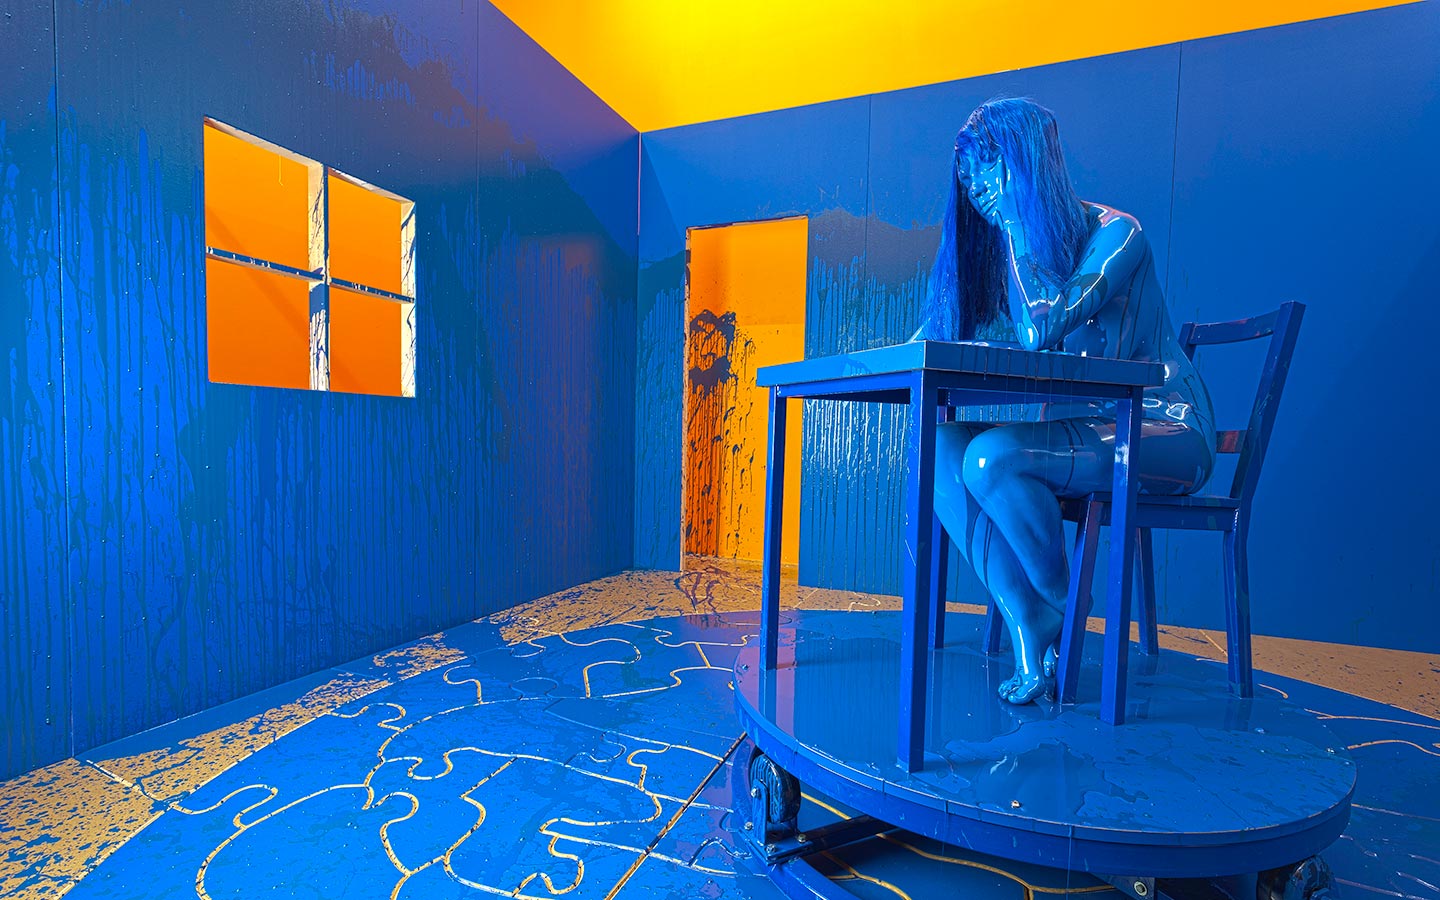 Habitación Azul de Richard Jackson en el Museo Rubell